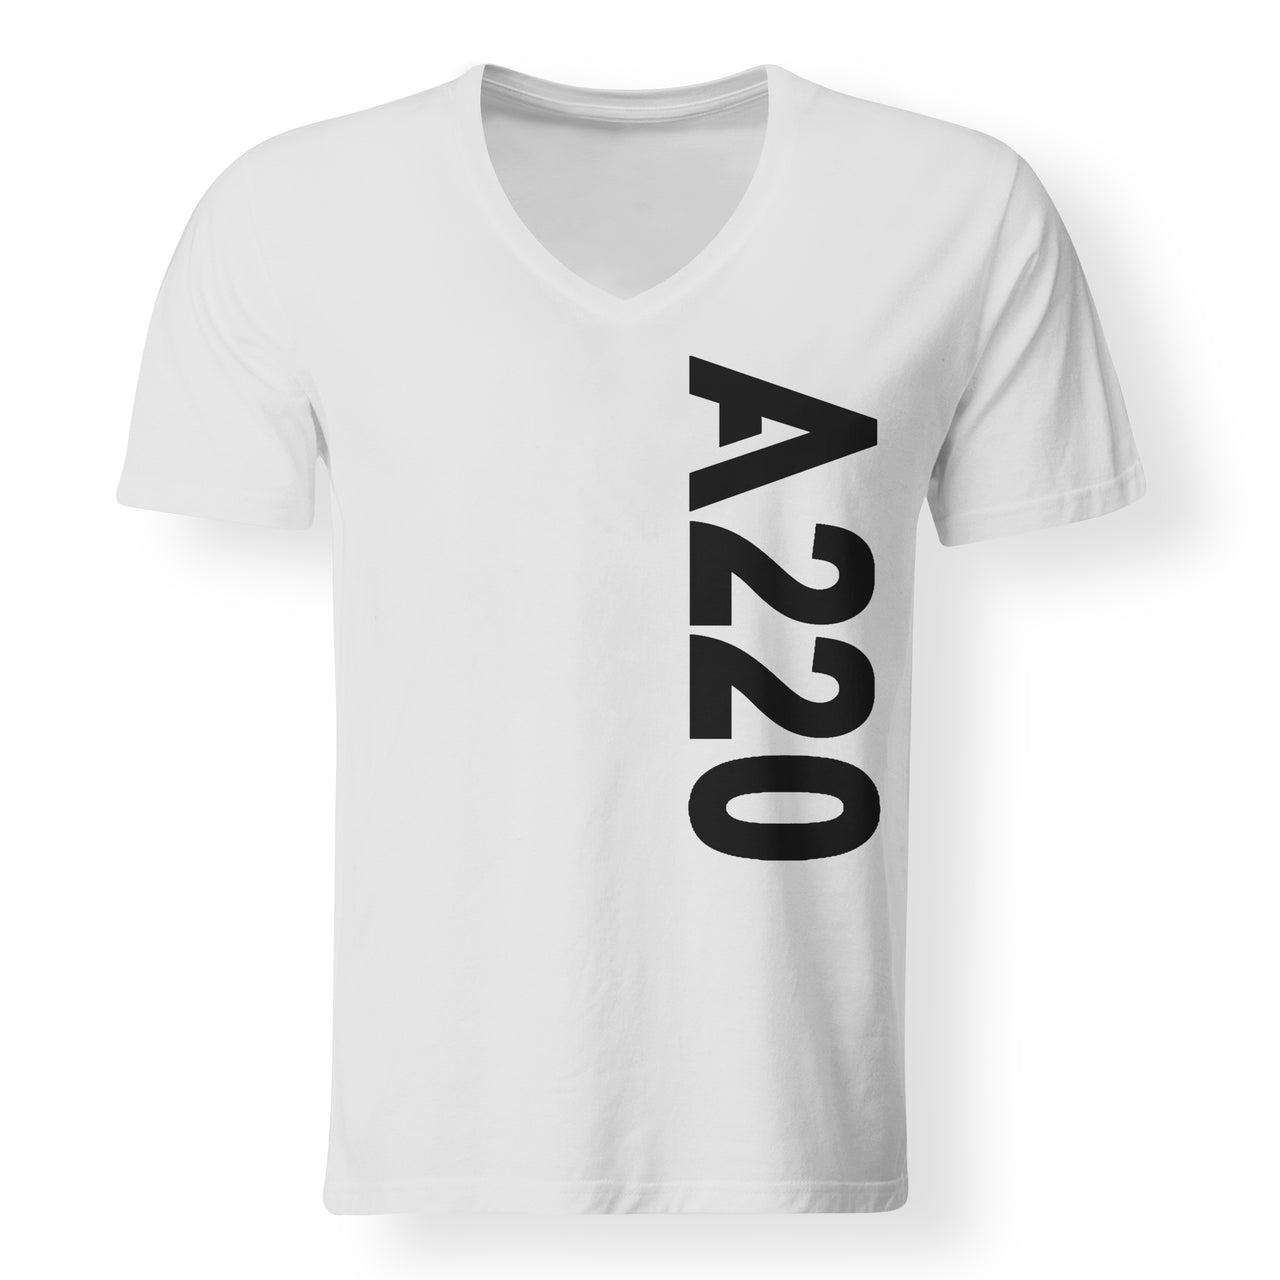 A220 Text Designed V-Neck T-Shirts